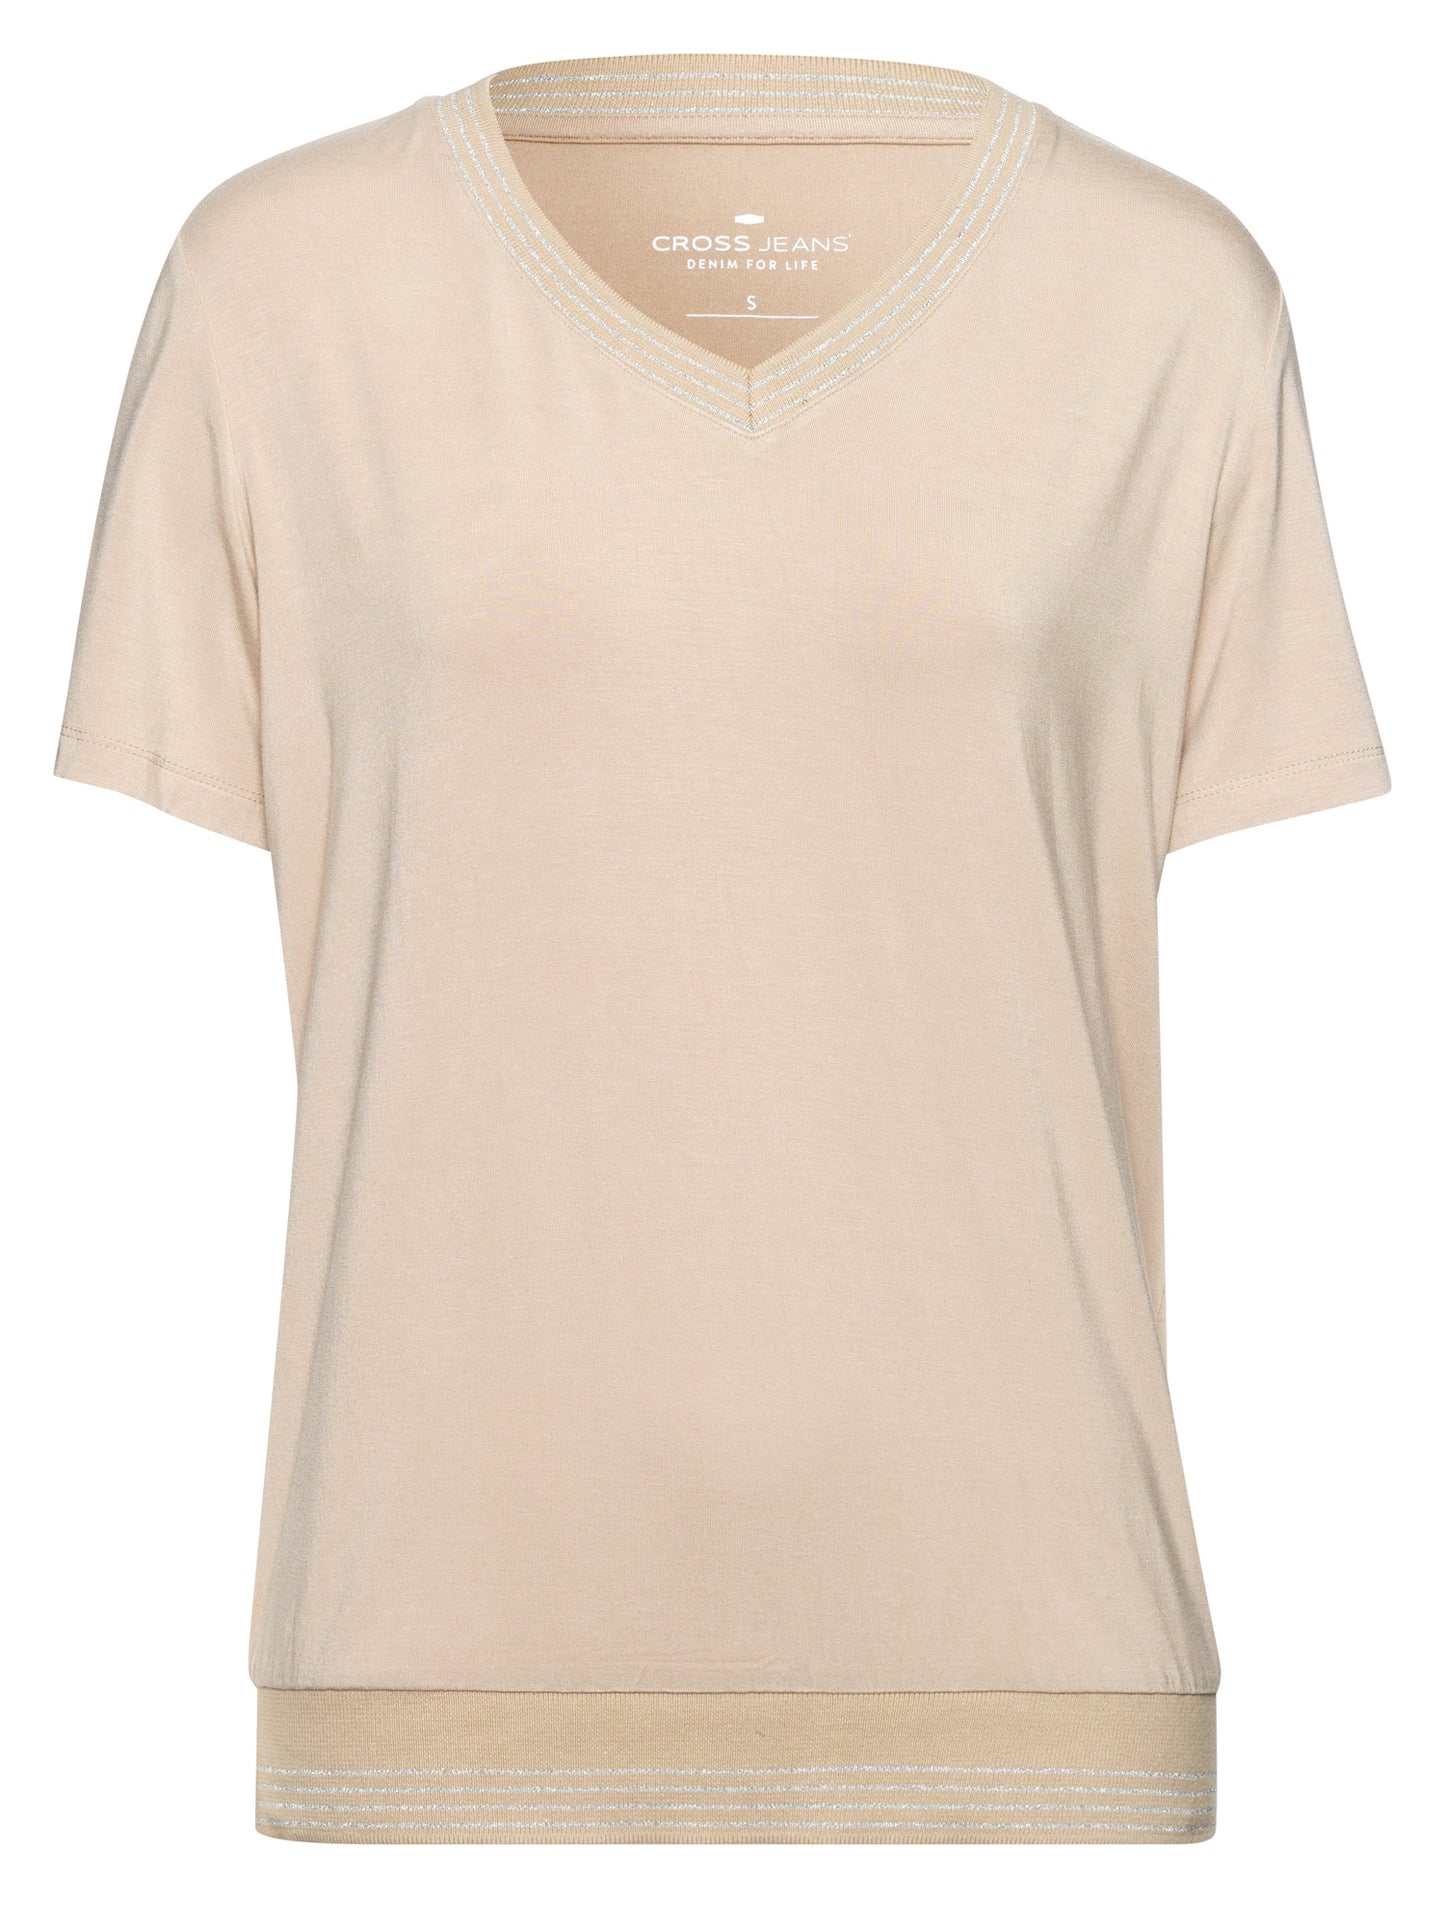 Women's regular V-neck T-shirt in stone colour.